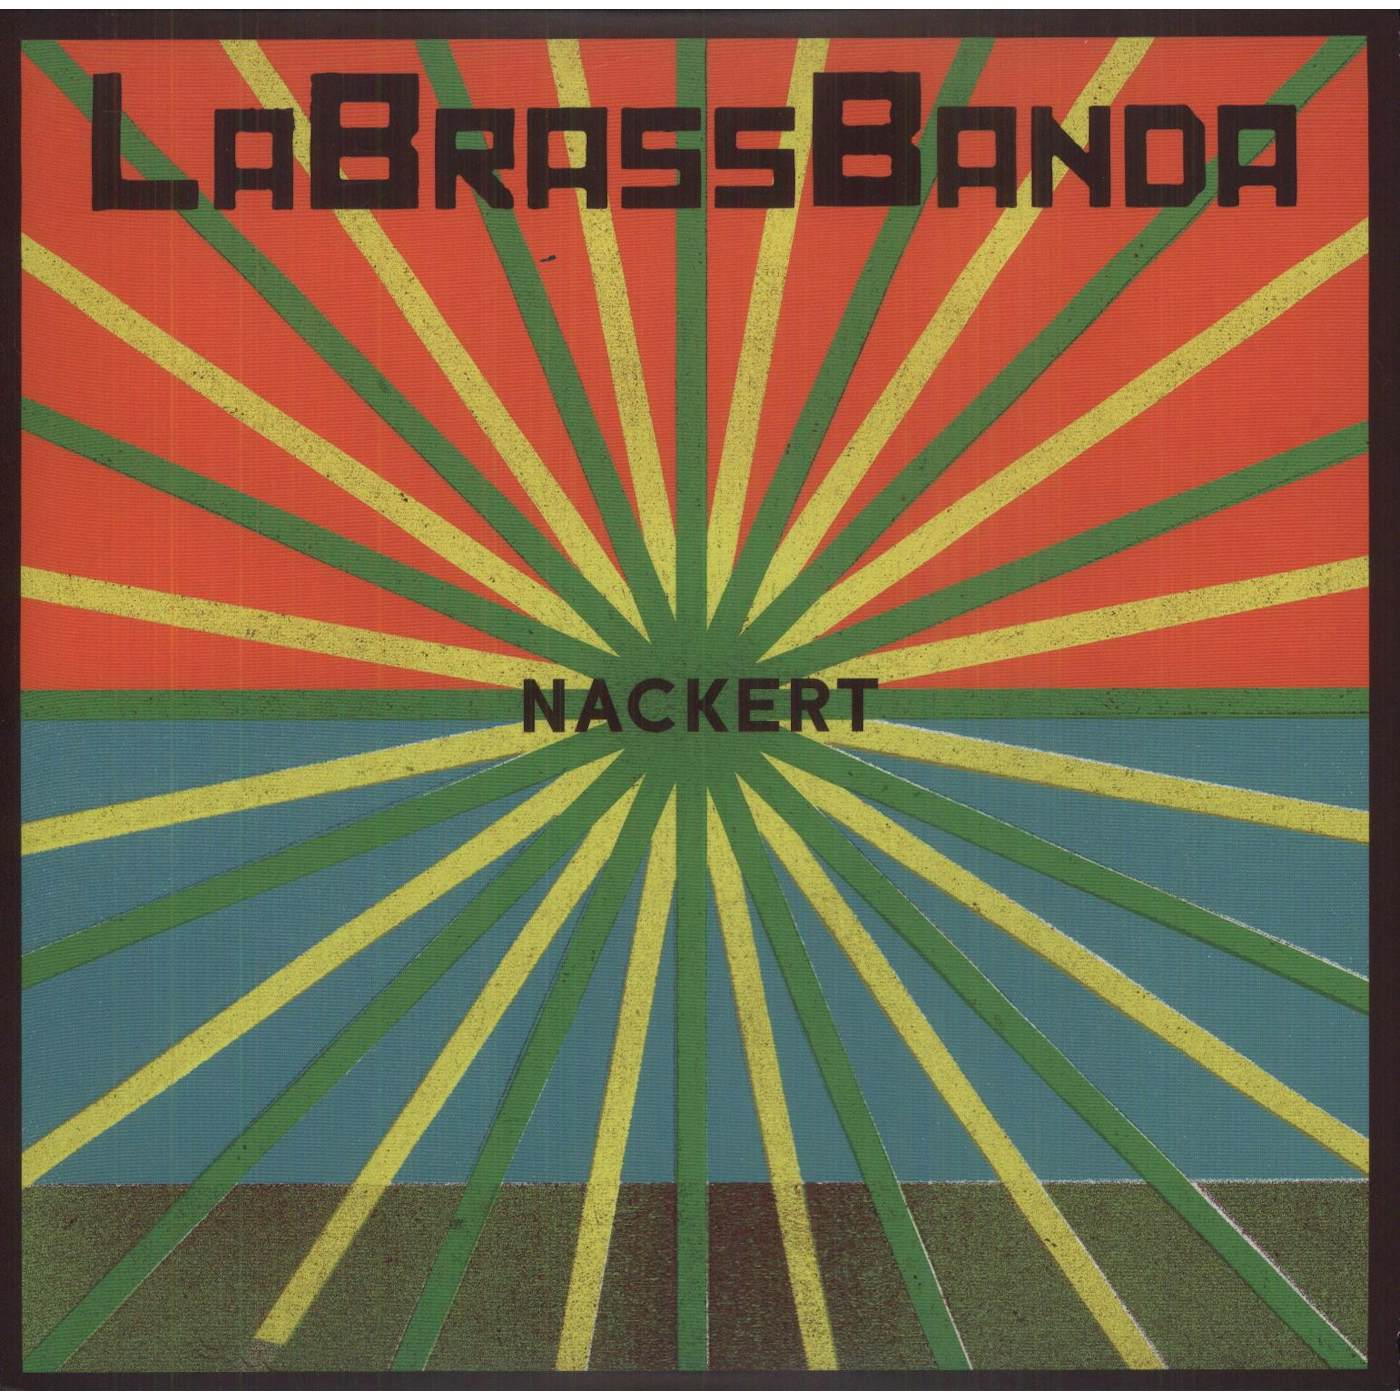 LaBrassBanda NACKERT Vinyl Record